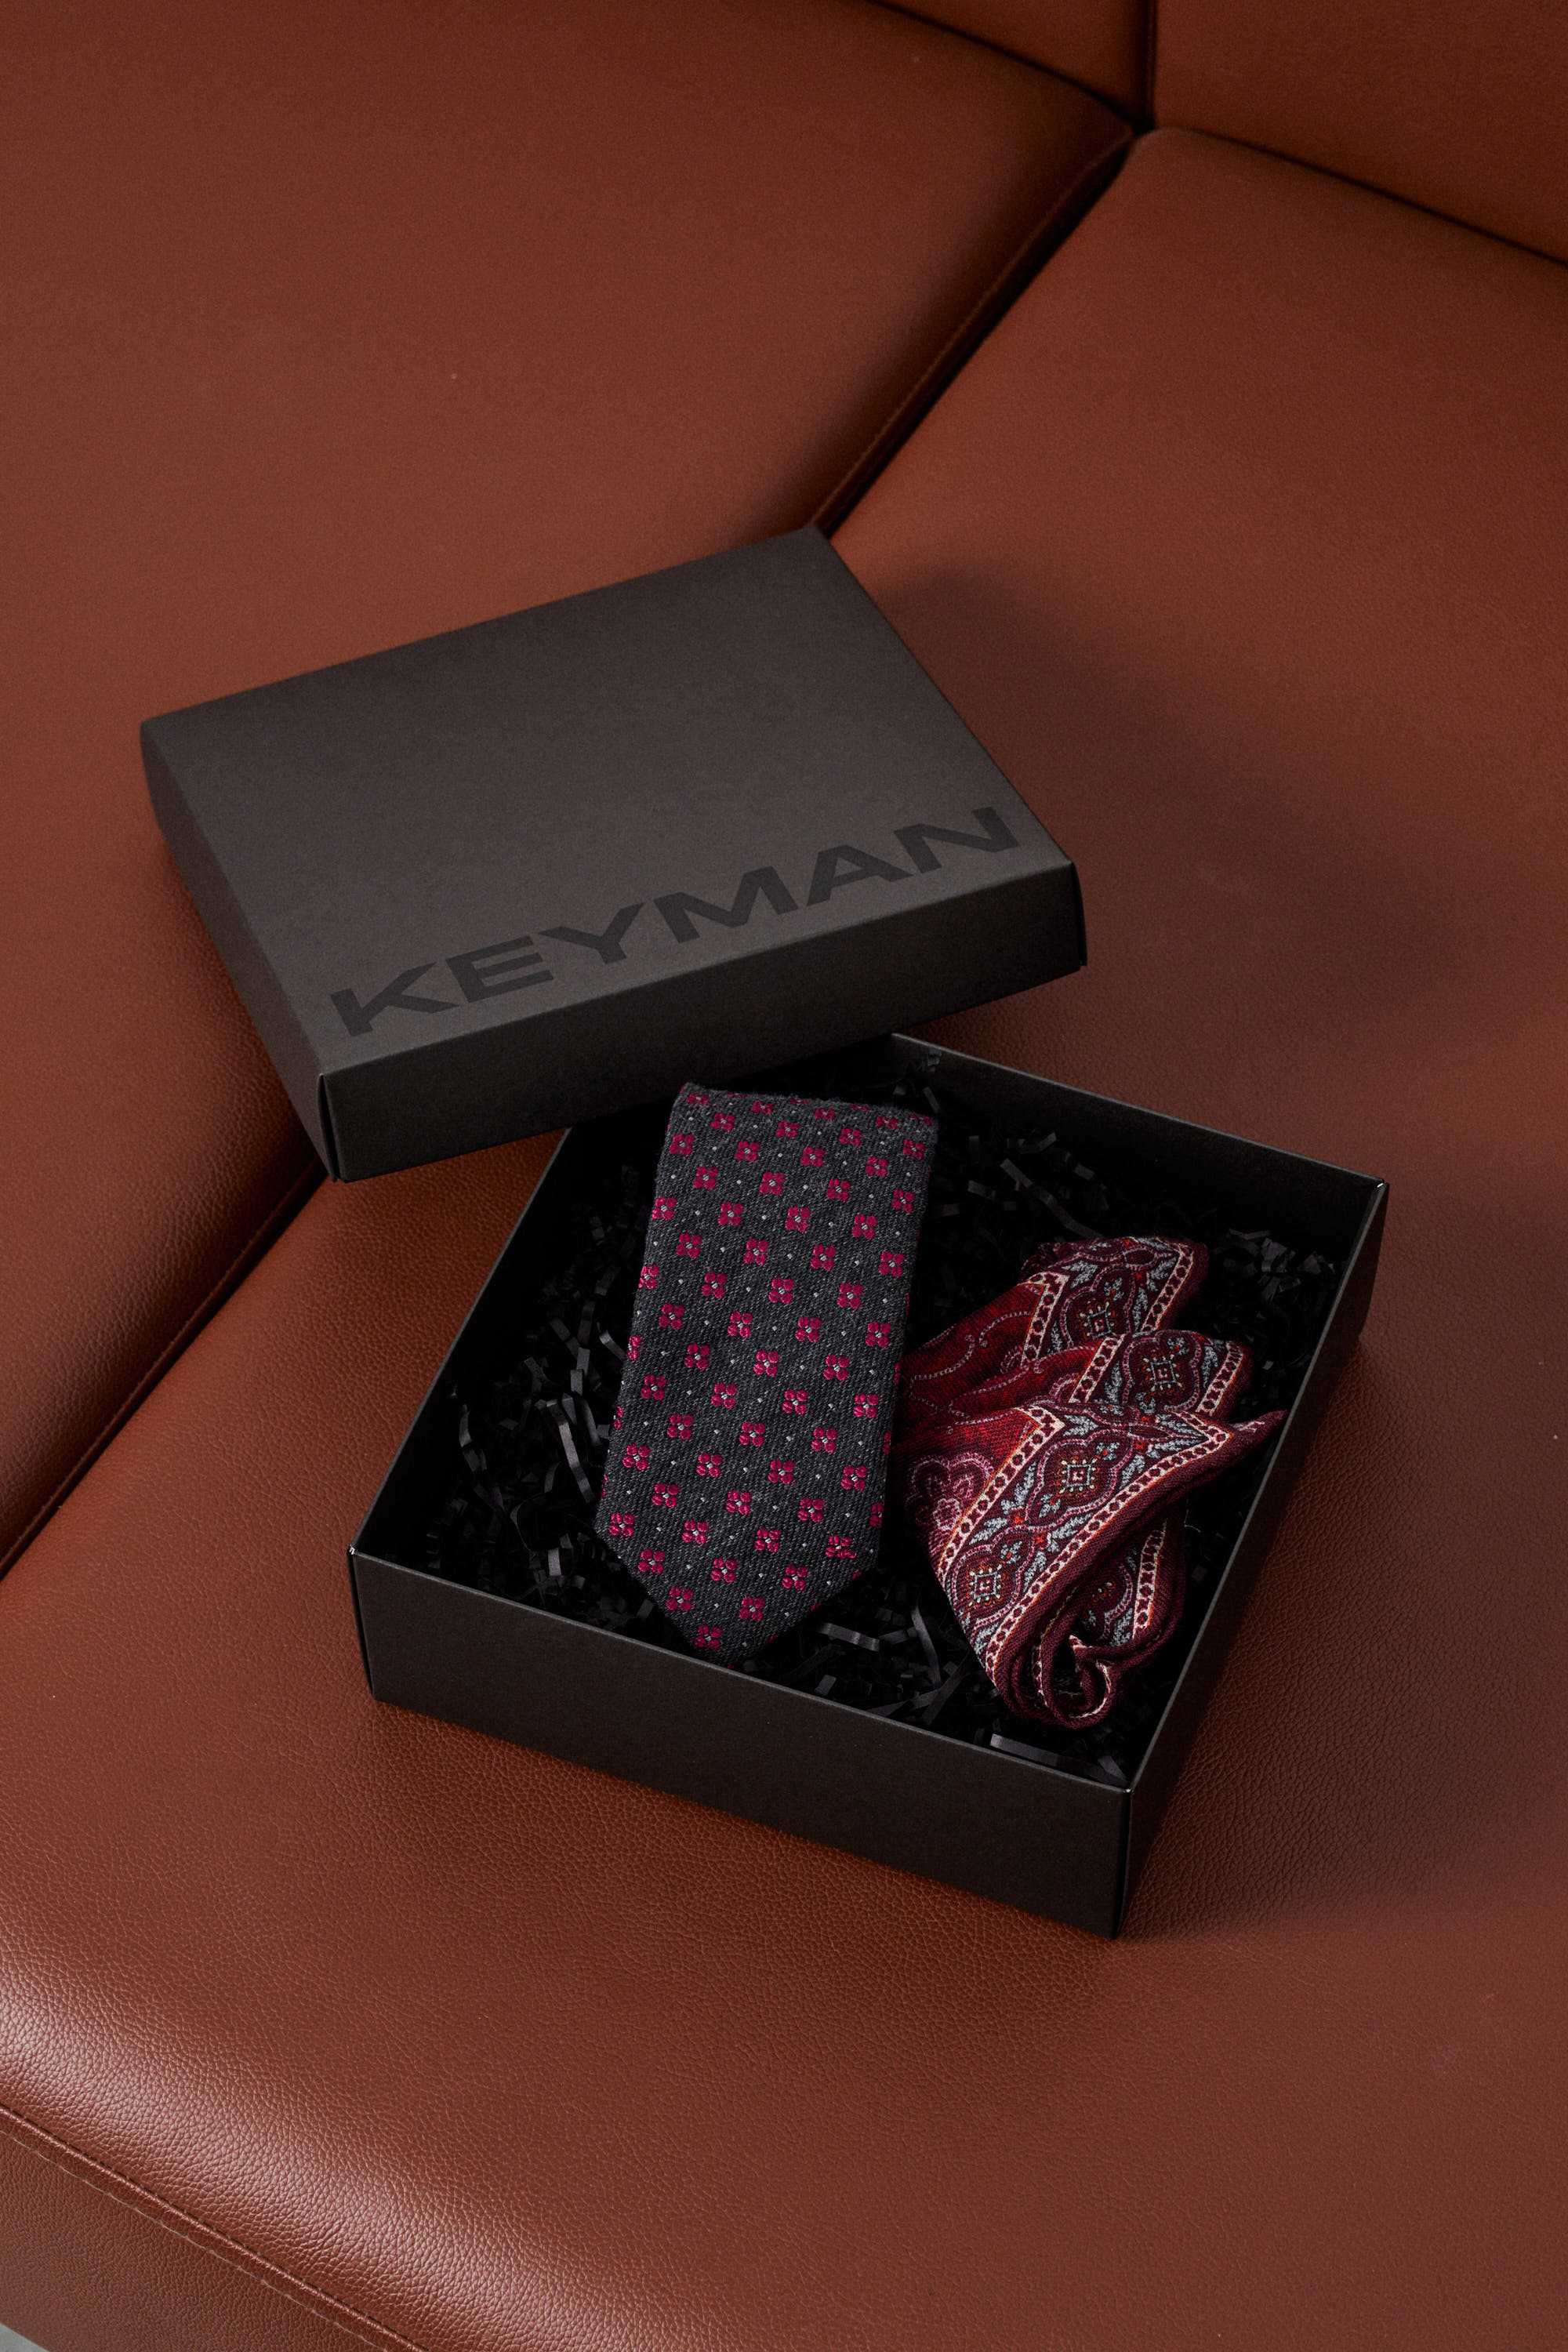 Пример подарочного набора Keyman (фирменная коробочка, платок в карман пиджака, галстук)